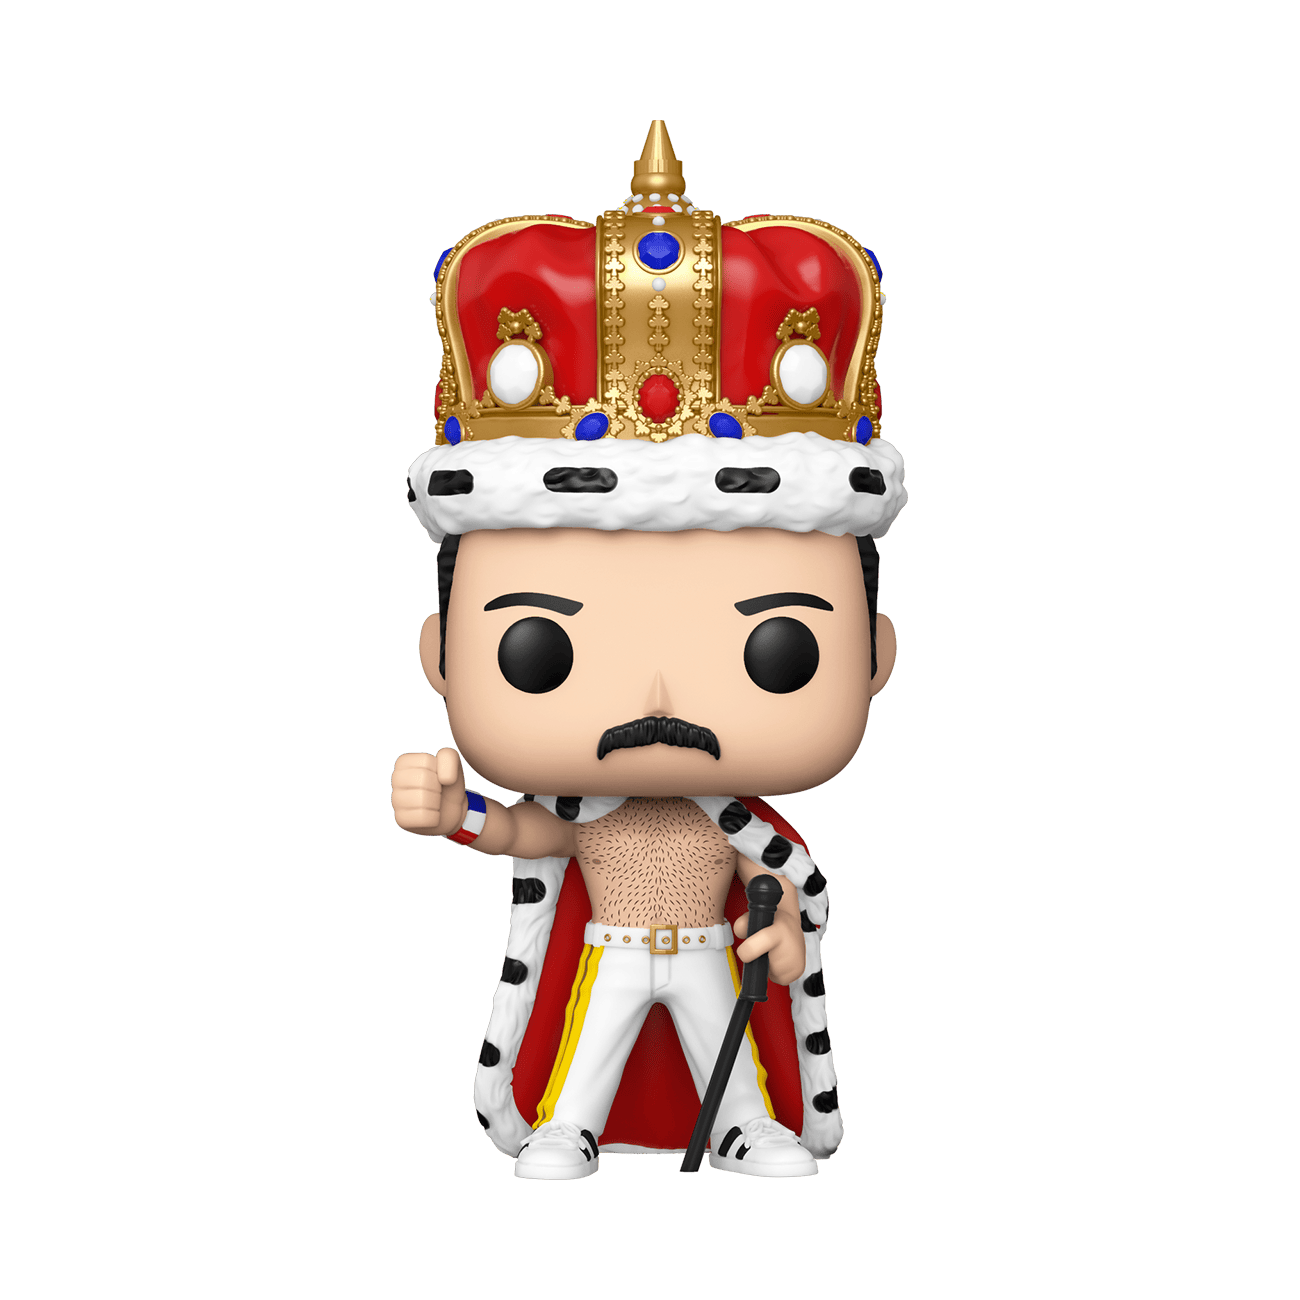 Buy Pop! Freddie Mercury as King at Funko.